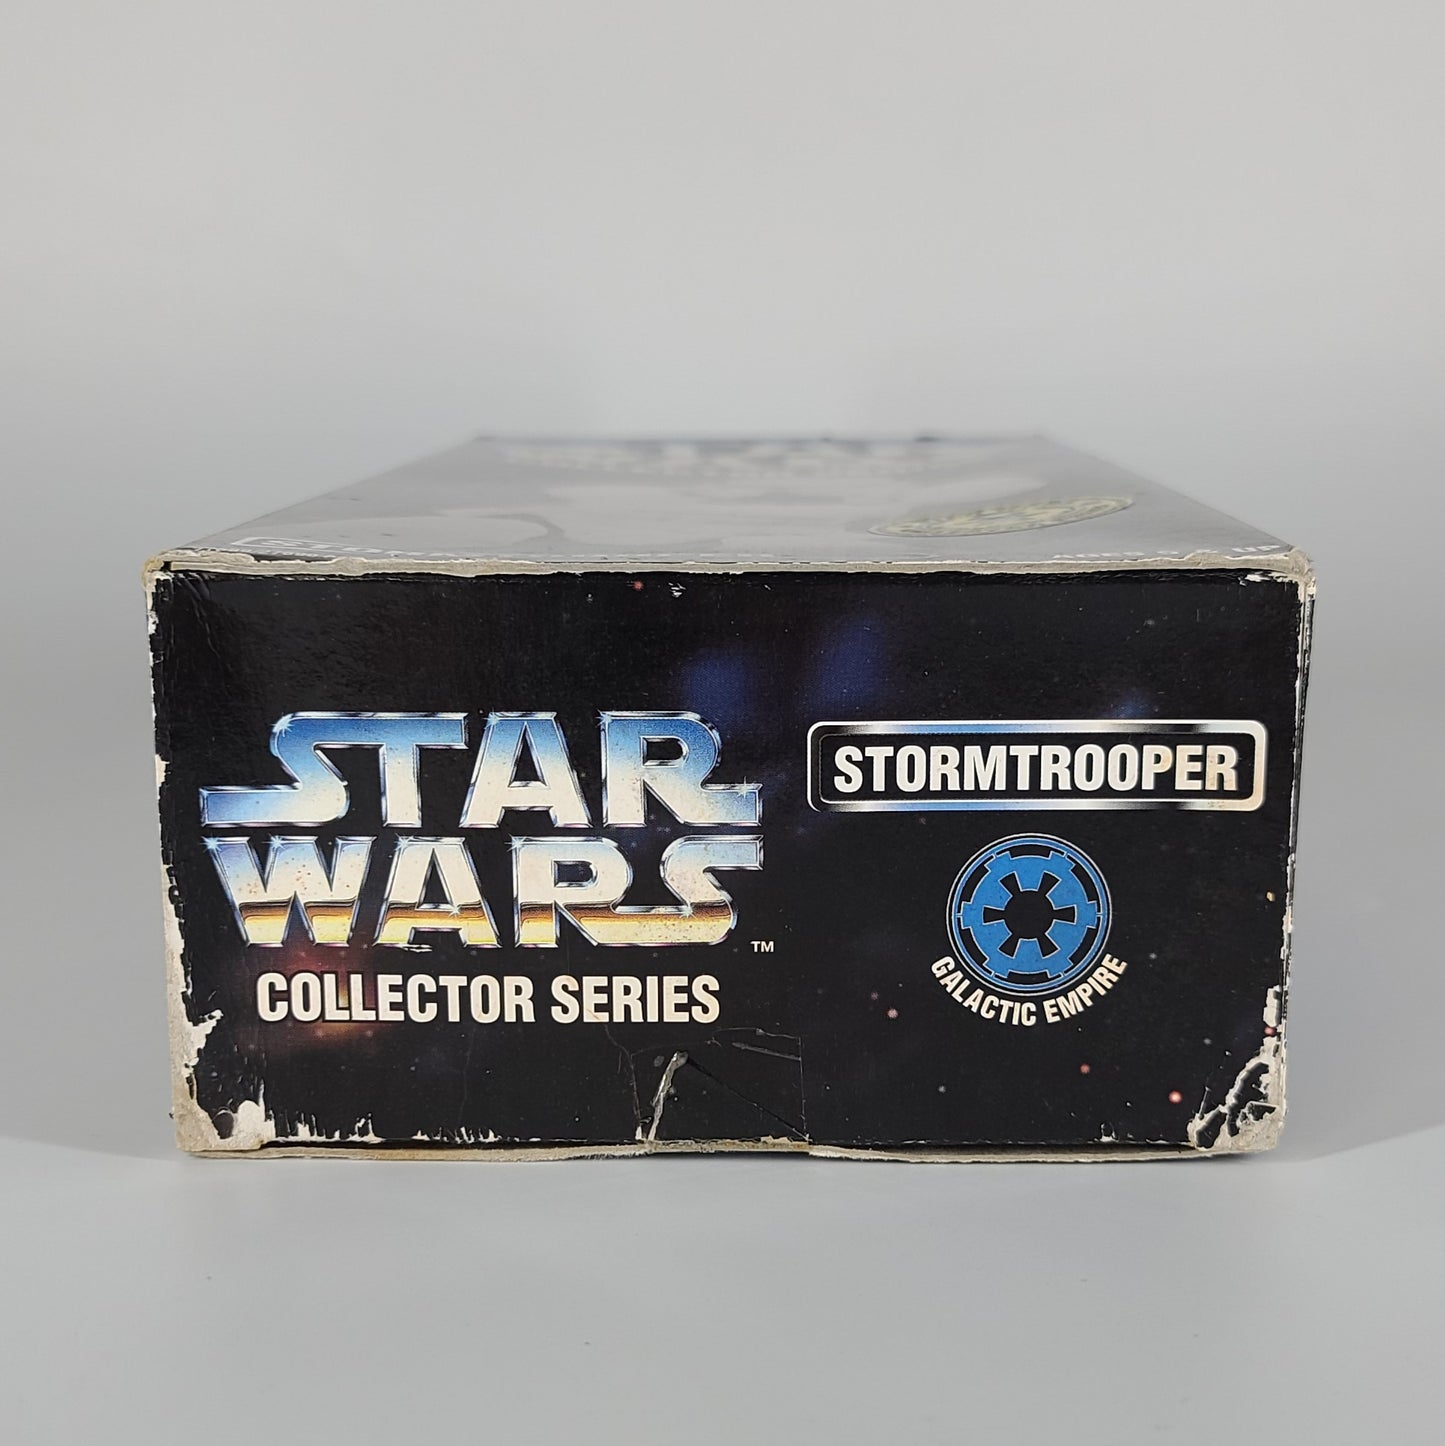 Star Wars 'Stormtrooper' Action Figure